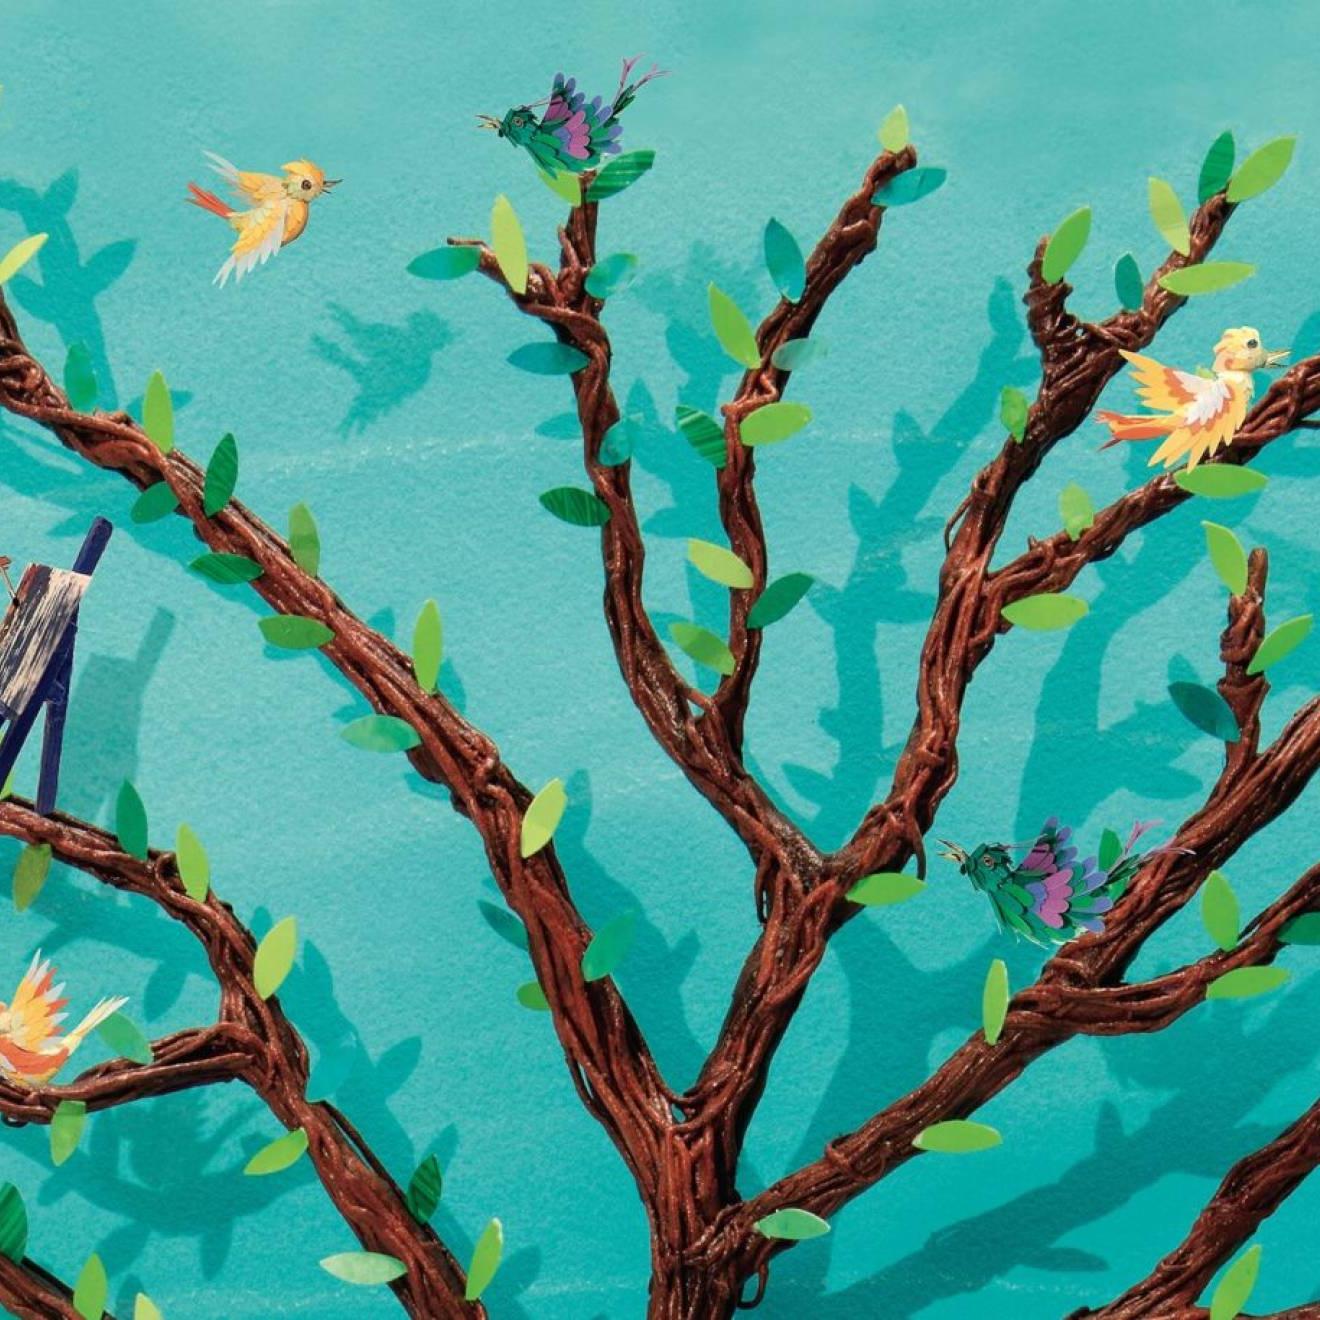 绿松石背景下一棵棕色树的插图, 树枝上有小人和小鸟